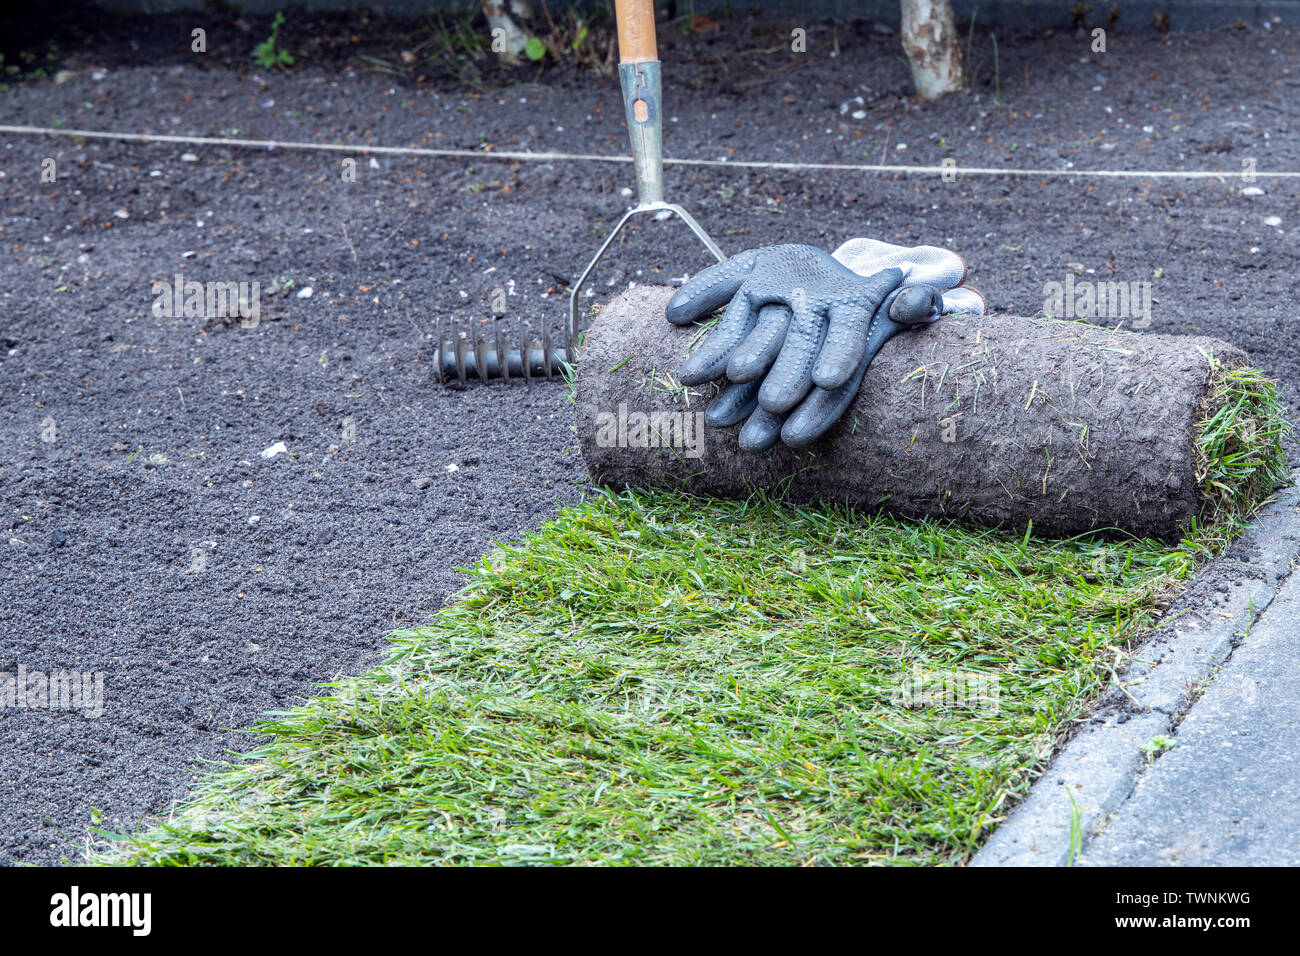 Applicazione di un tappeto erboso naturale rotoli in giardino. Immagine concettuale. Foto Stock